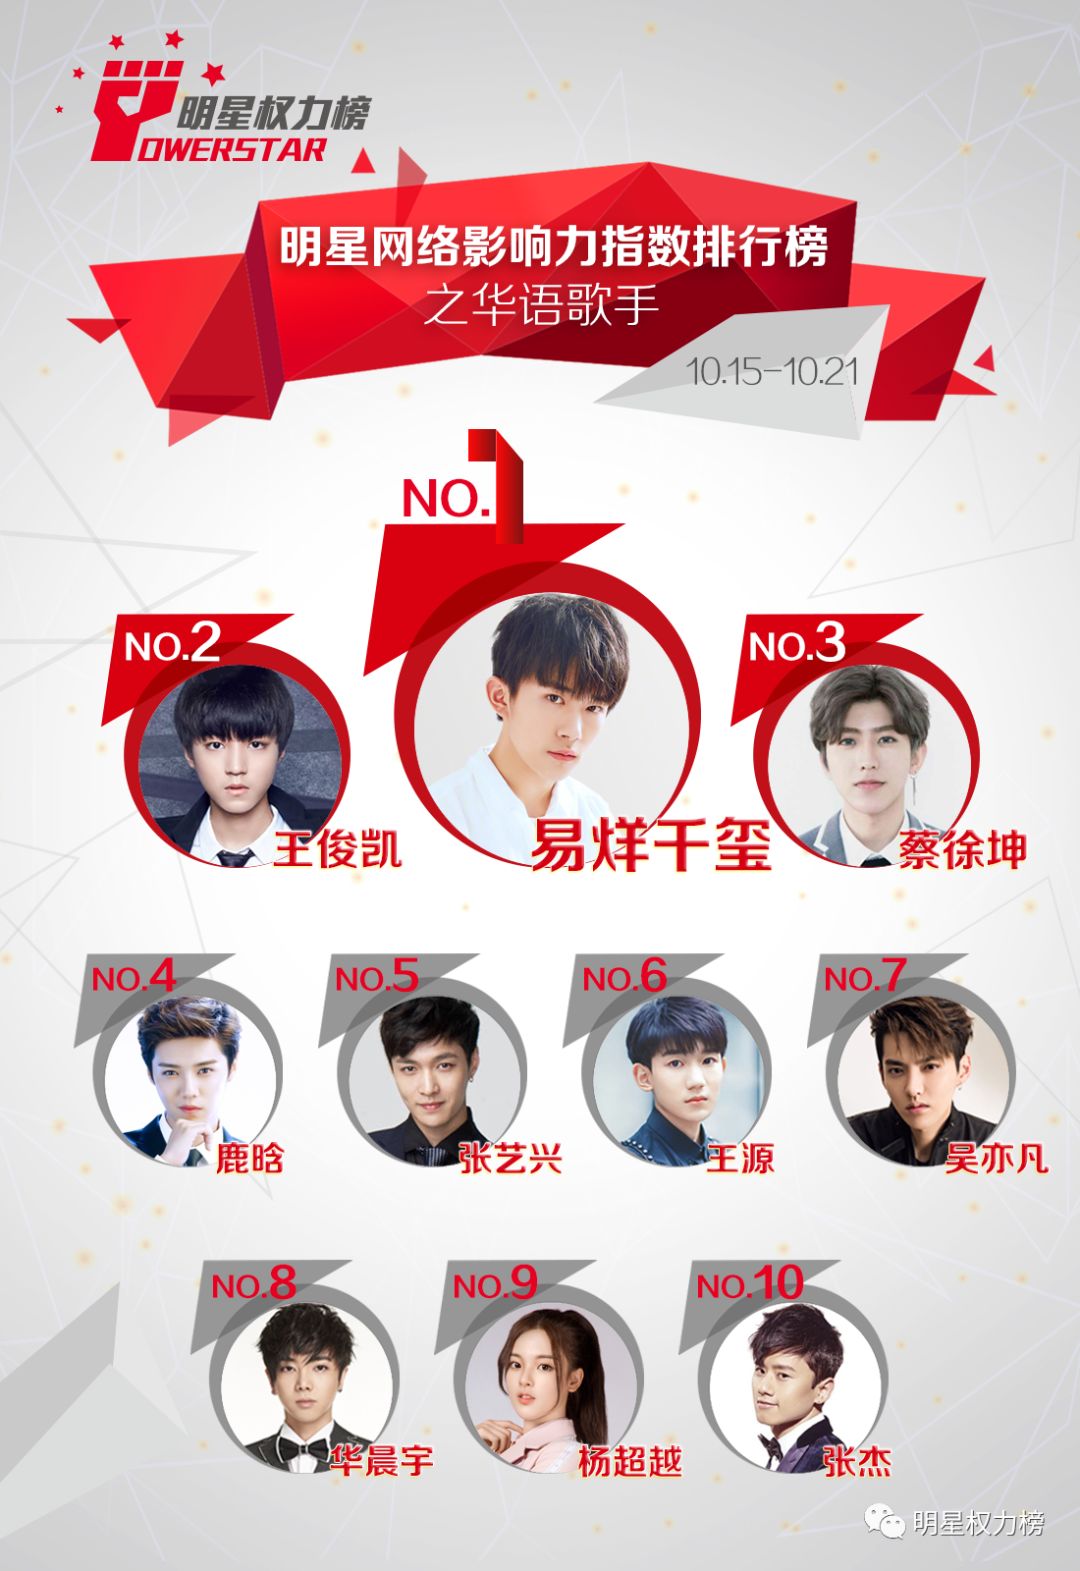 明星网络影响力指数排行榜第179期榜单之华语歌手Top10